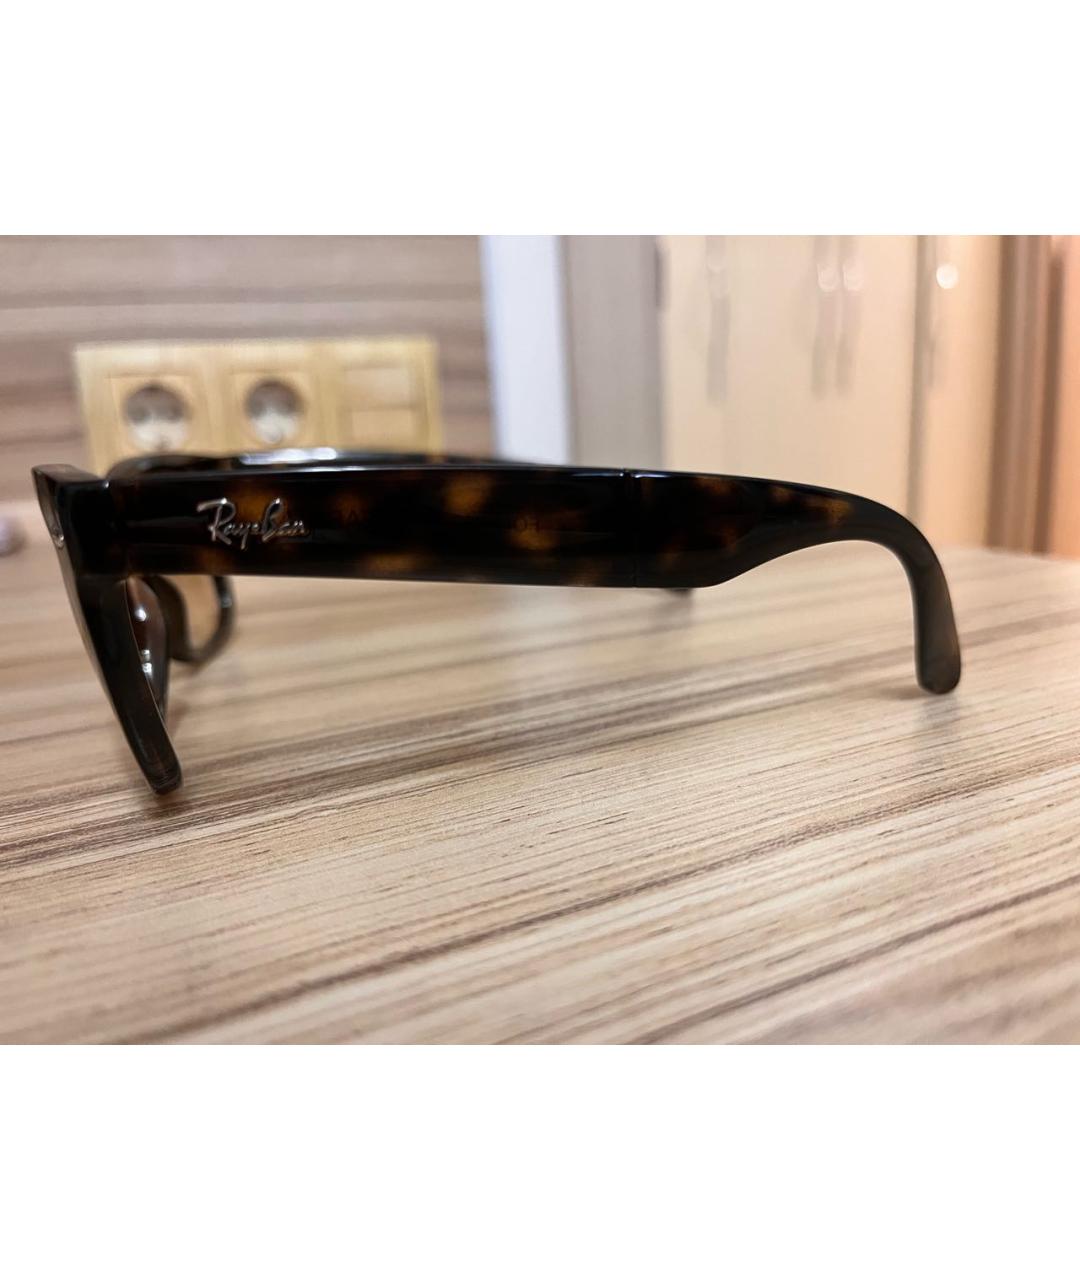 RAY BAN Коричневые пластиковые солнцезащитные очки, фото 6